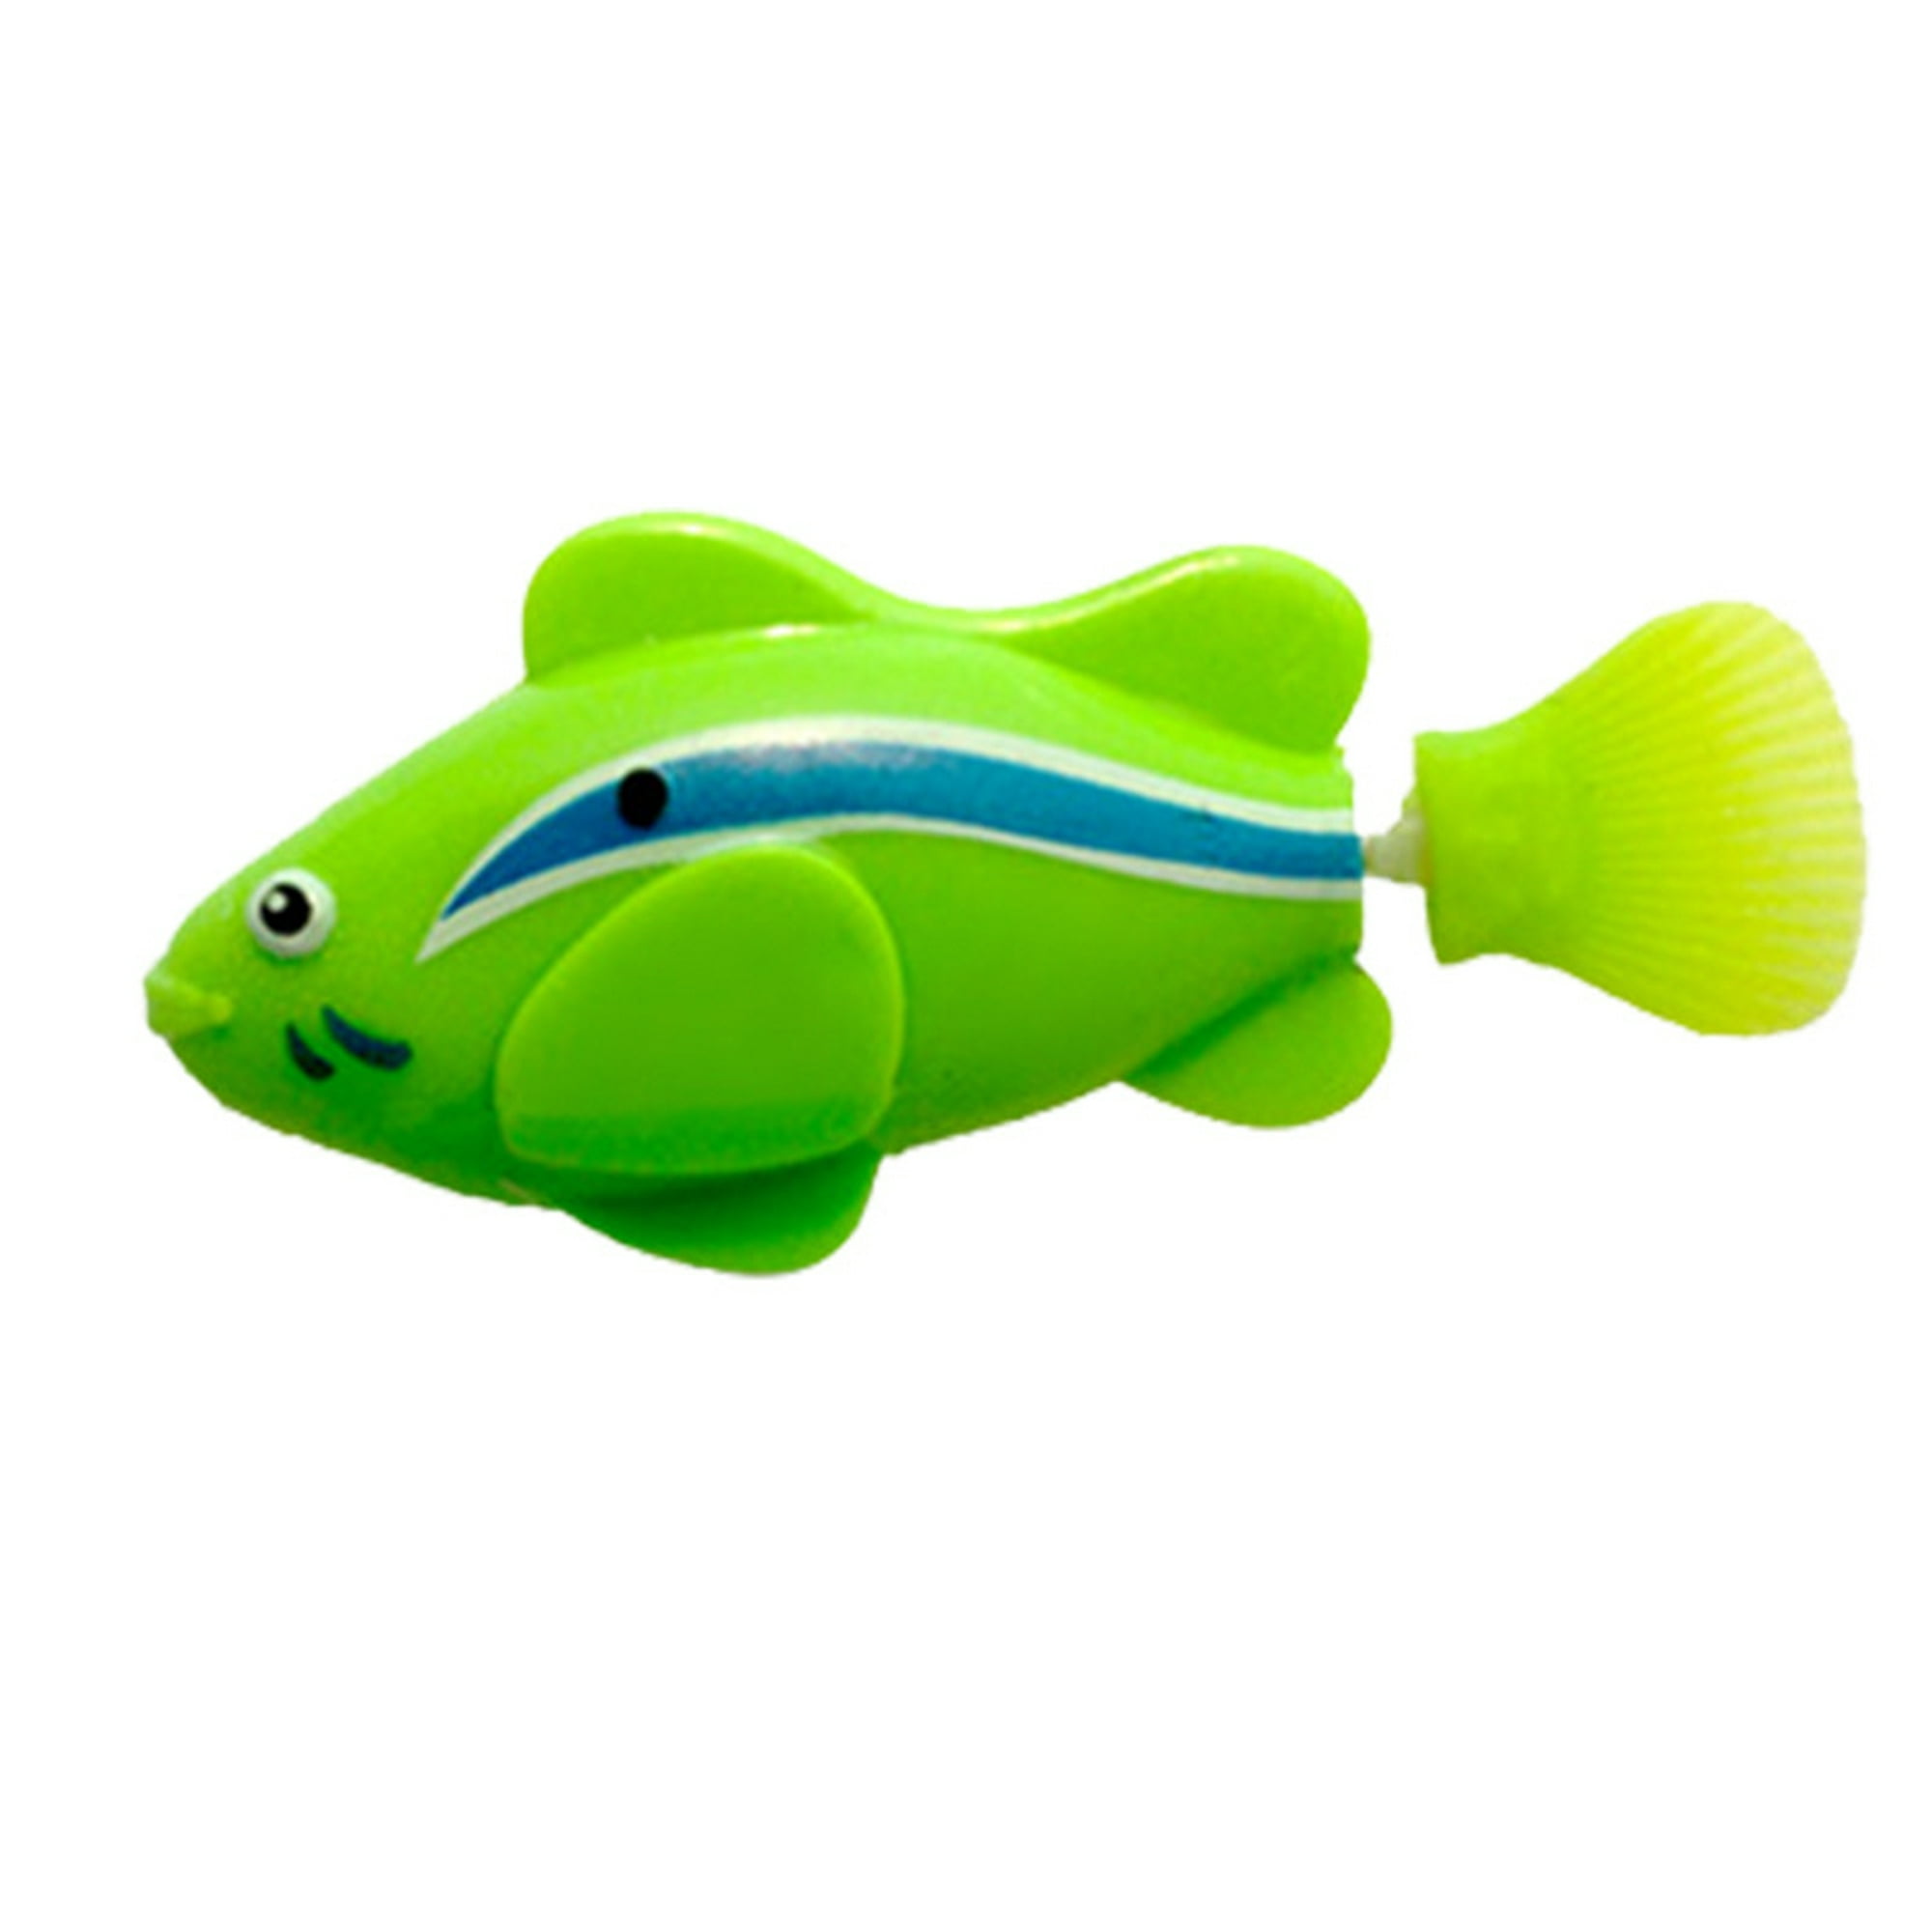  Peces de natación  3 piezas de peces de juguete interactivos,  mini pez de natación realista, juguete activado para nadar en el agua con  luz LED para estimular los instintos de